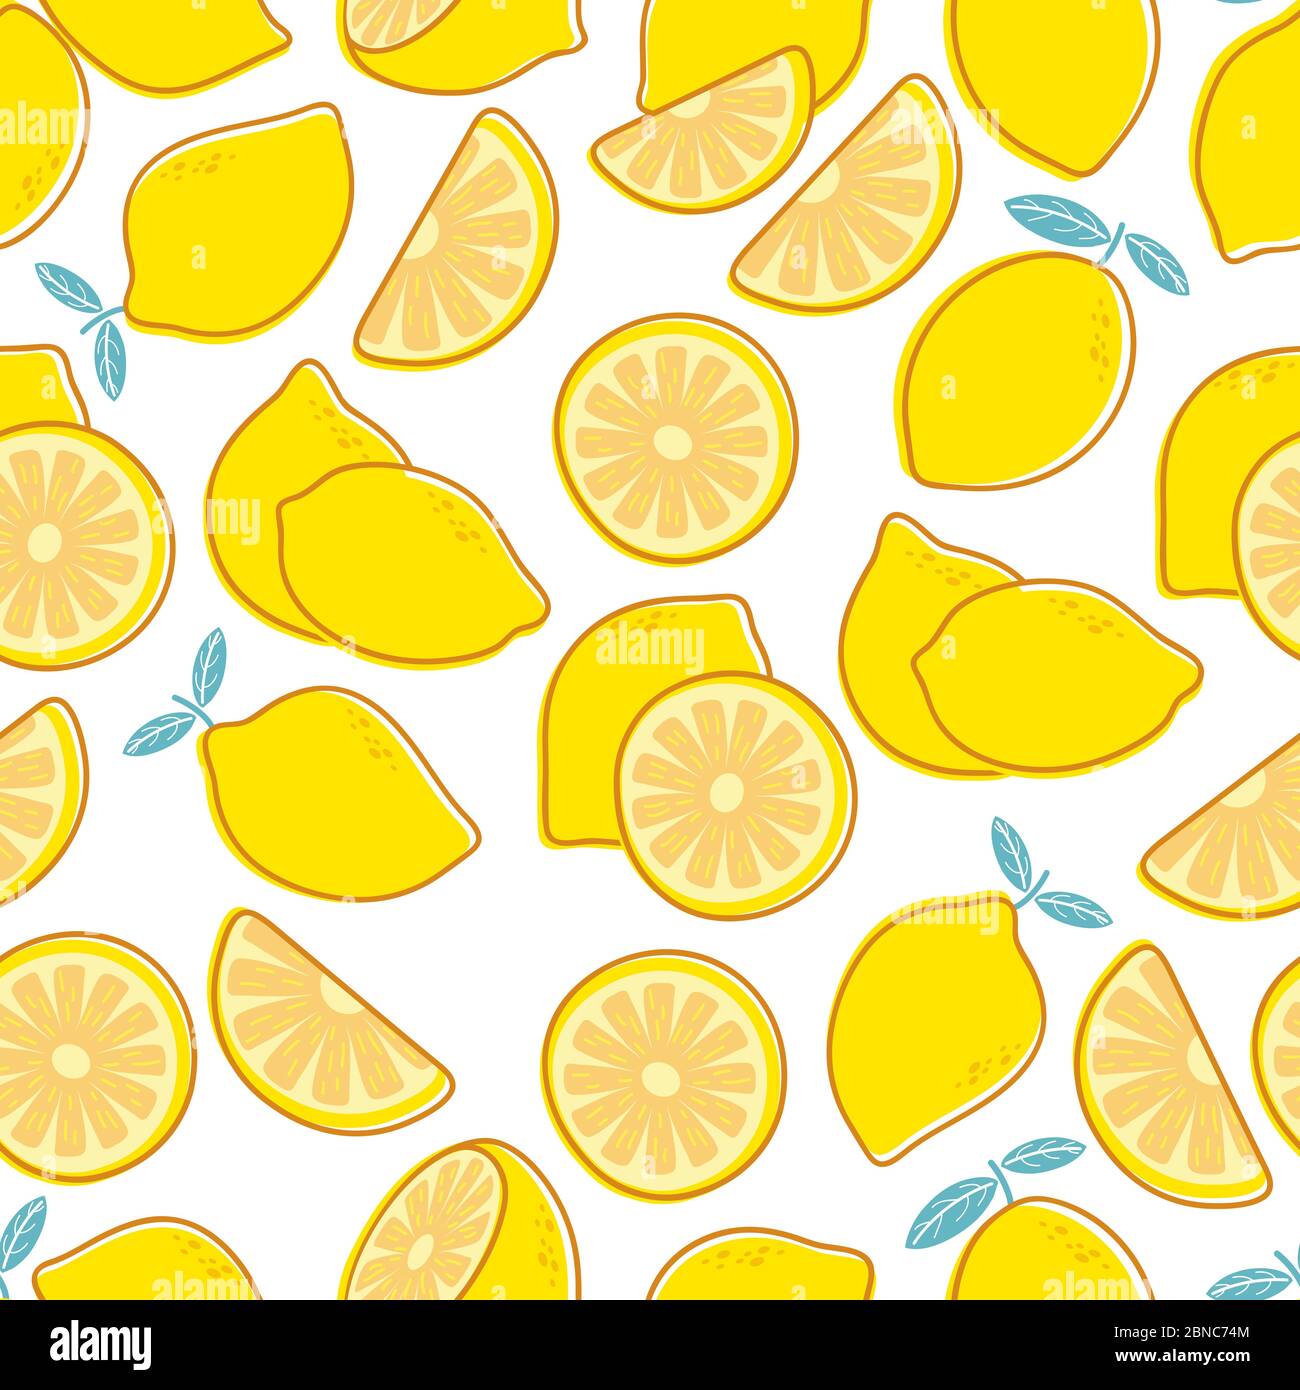 Modello senza cuciture al limone. Stampa tropicale di agrumi esotici. Limoni gialli estate floreale ripetendo texture decorativa vettoriale. Illustrazione di modello di frutta, agrumi estivi Illustrazione Vettoriale